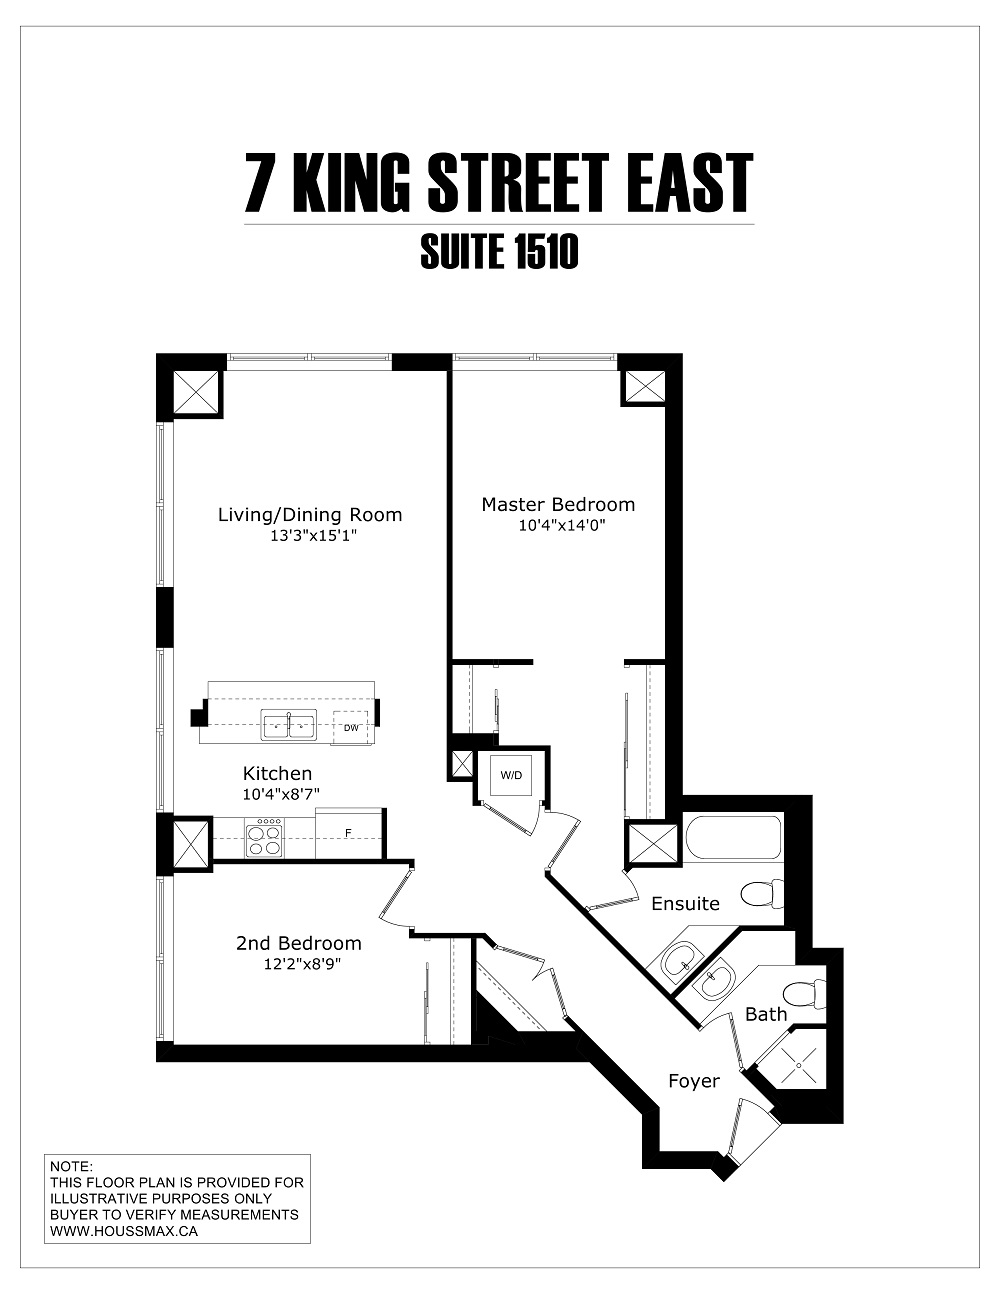 Floor plans for 7 King Street East.